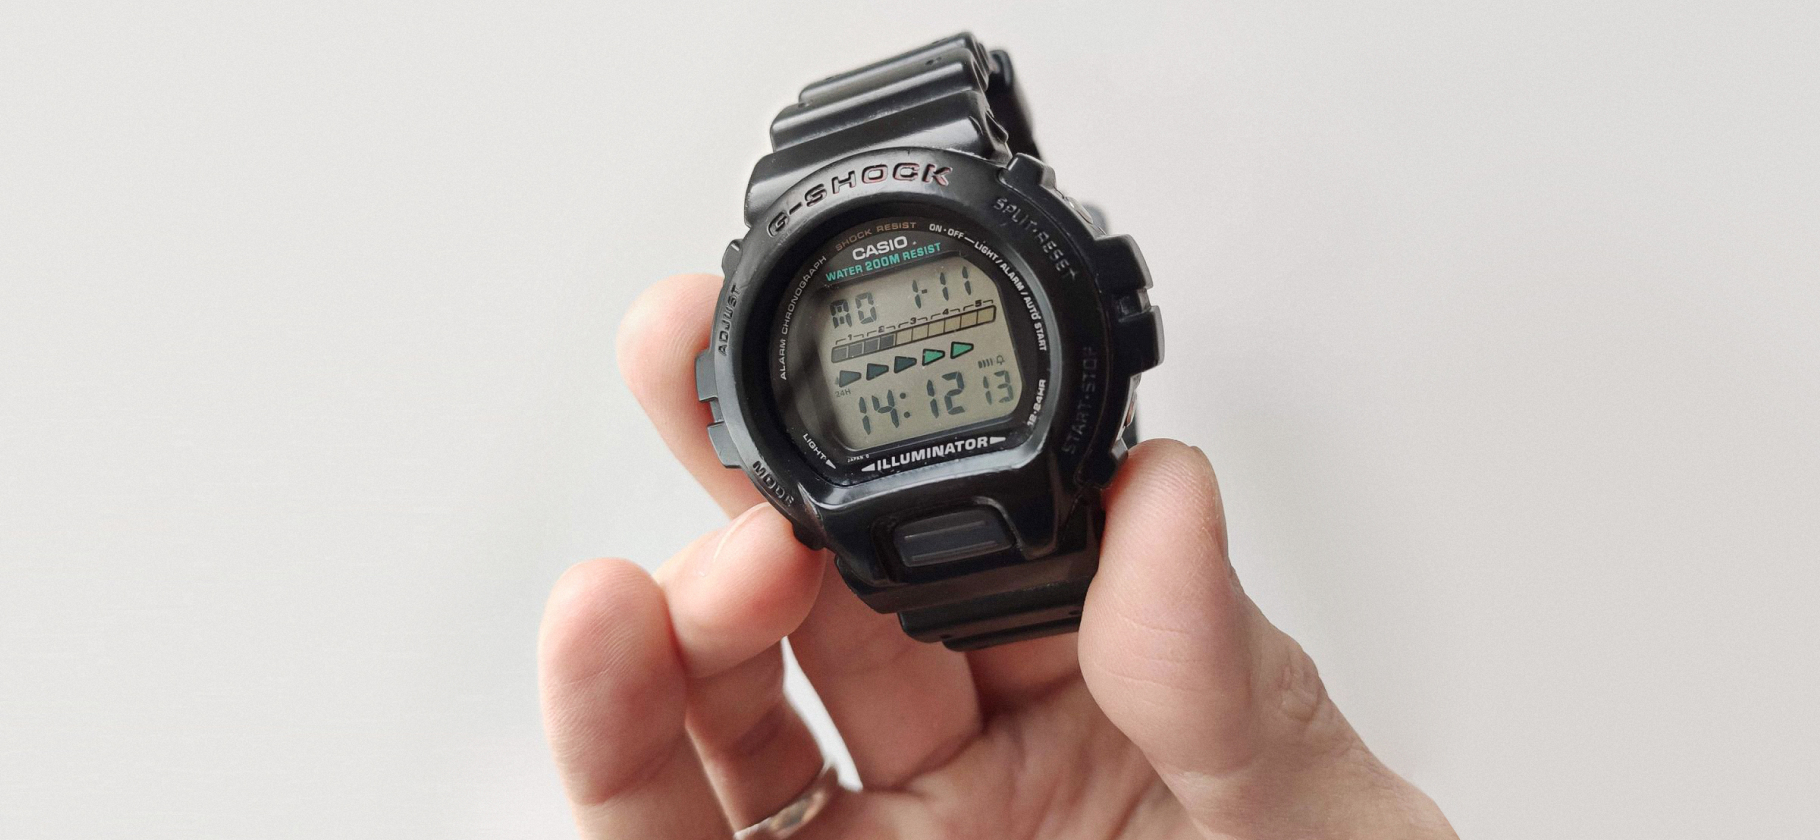 «Хороший прибор, чтобы управлять временем»: 17 любимых наручных часов с историей